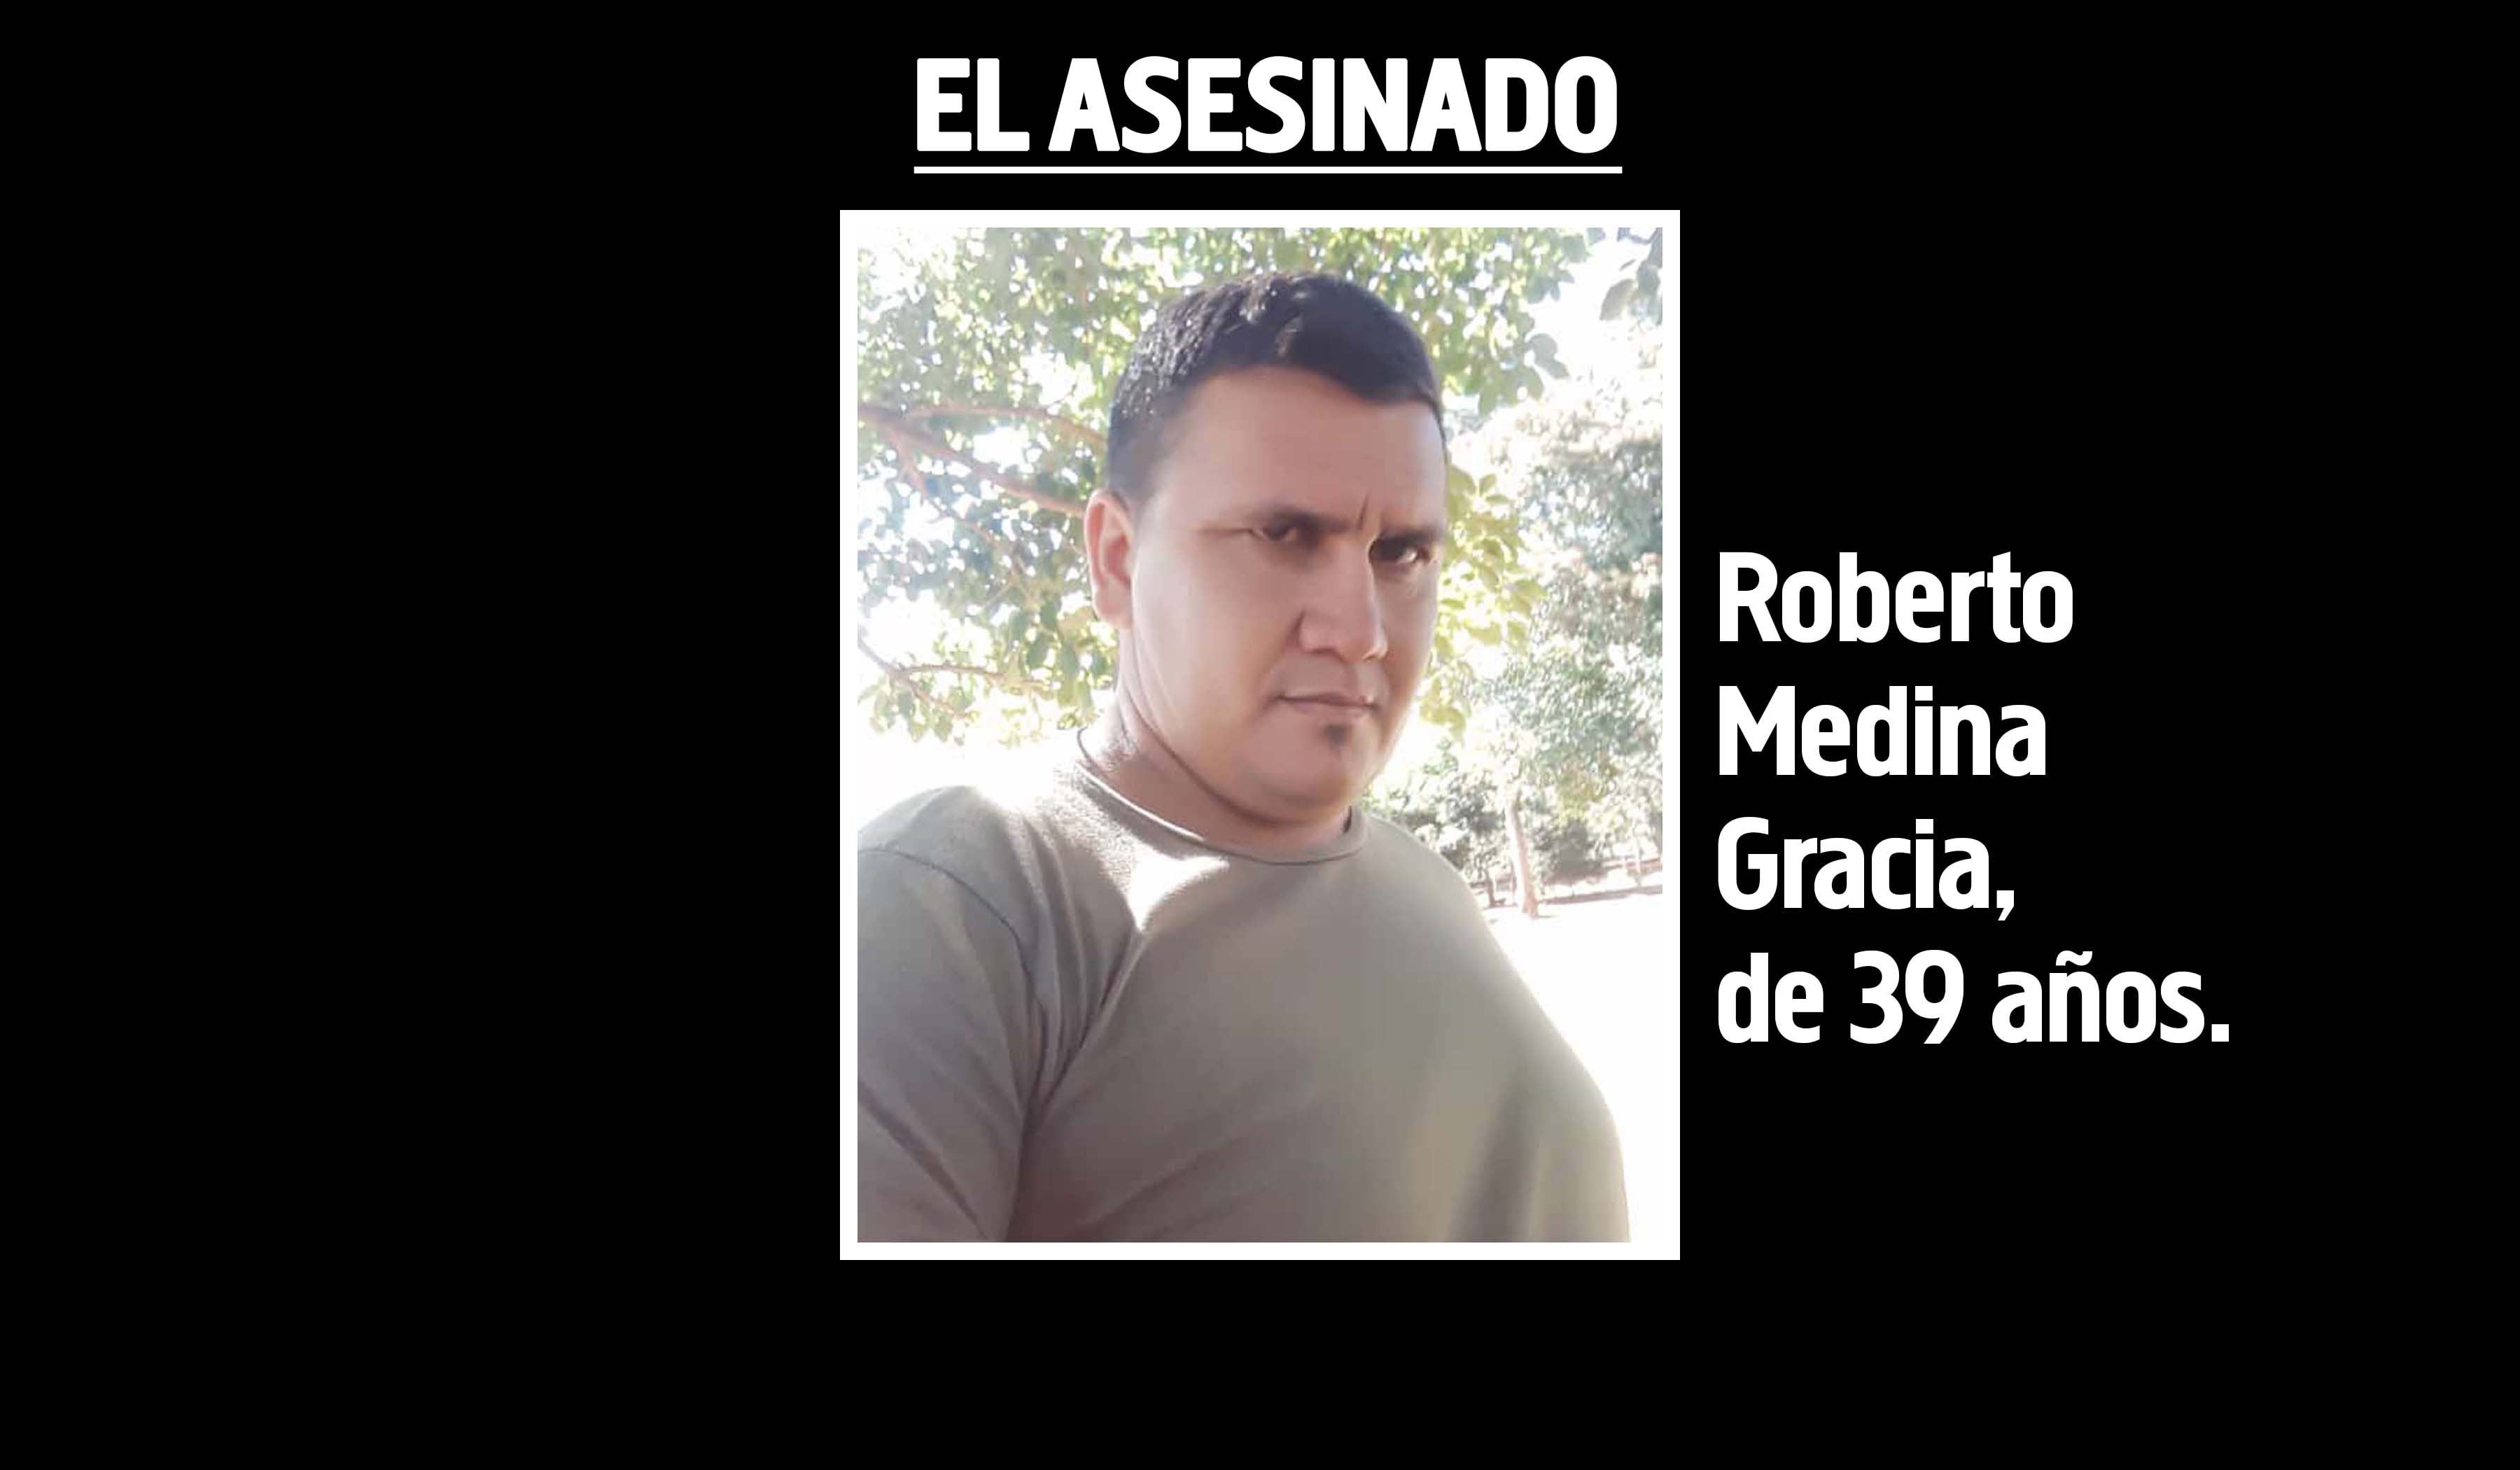 Roberto Medina Gracia, asesinado.